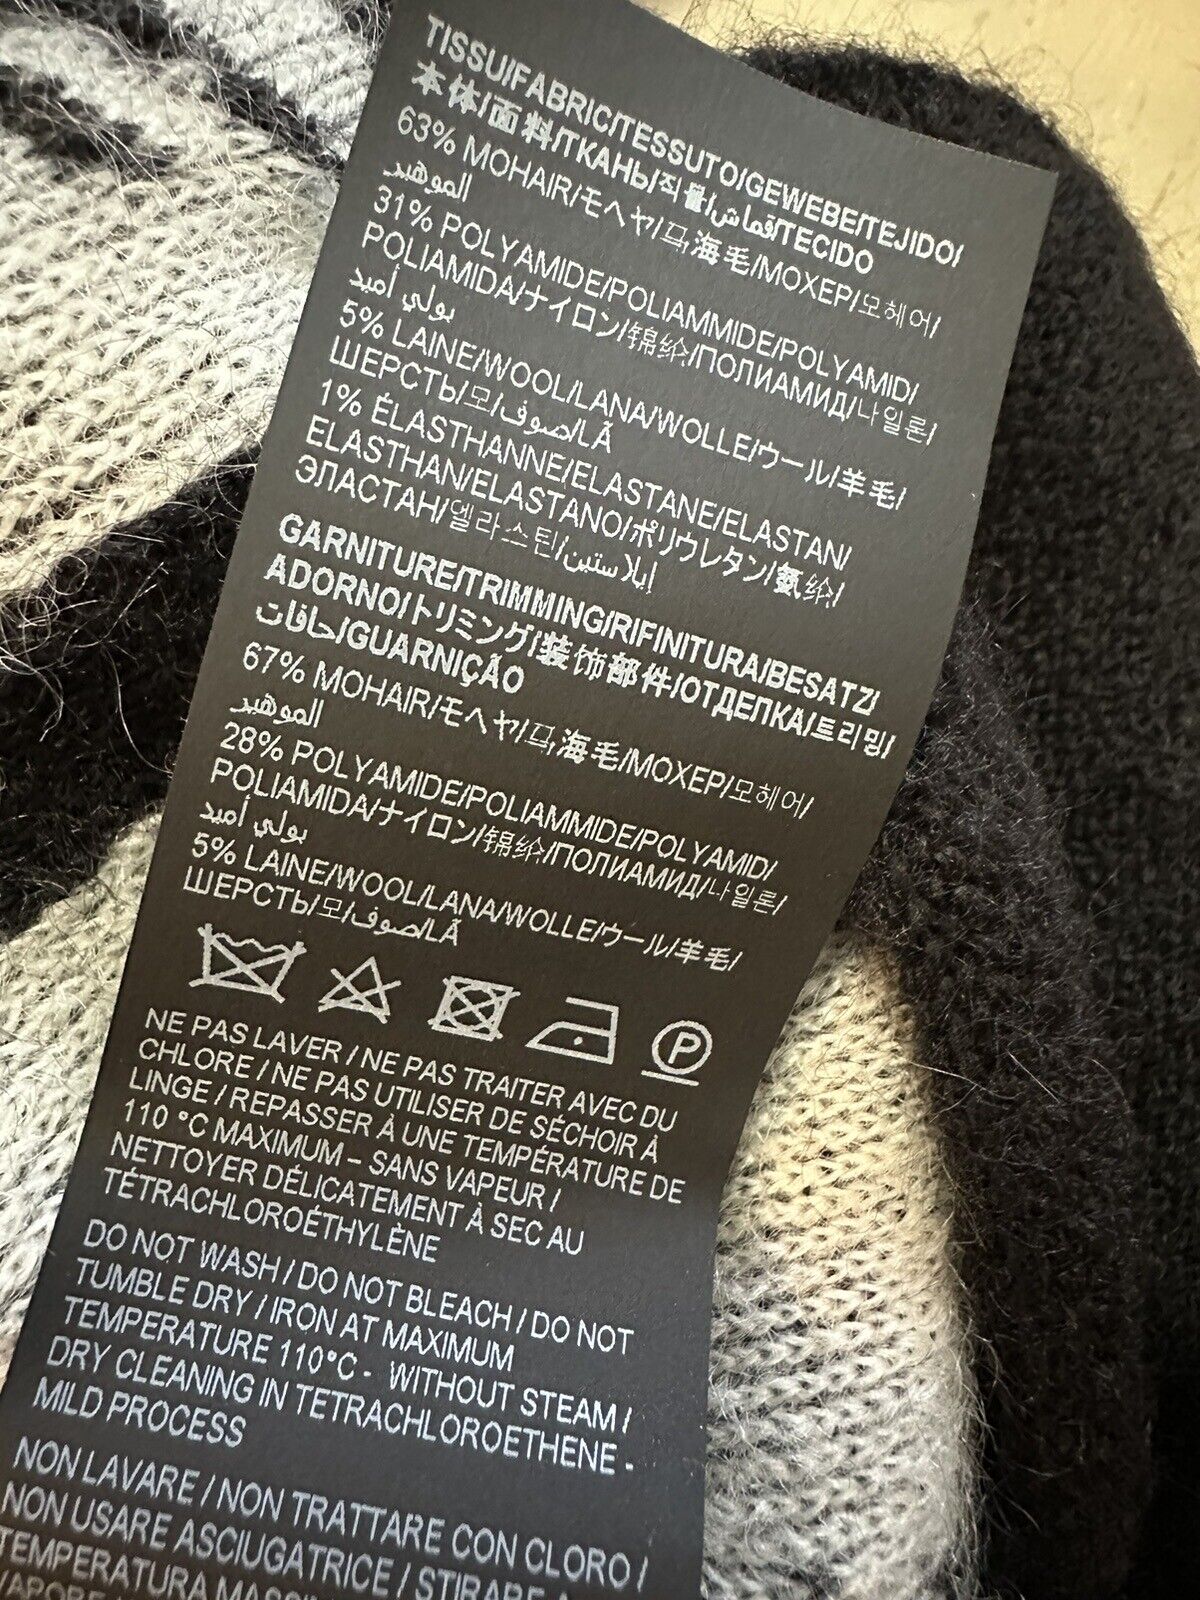 NWT $1550 Мужской кардиган Saint Laurent, свитер для скейтбординга, черный/натуральный, размер XL, Италия